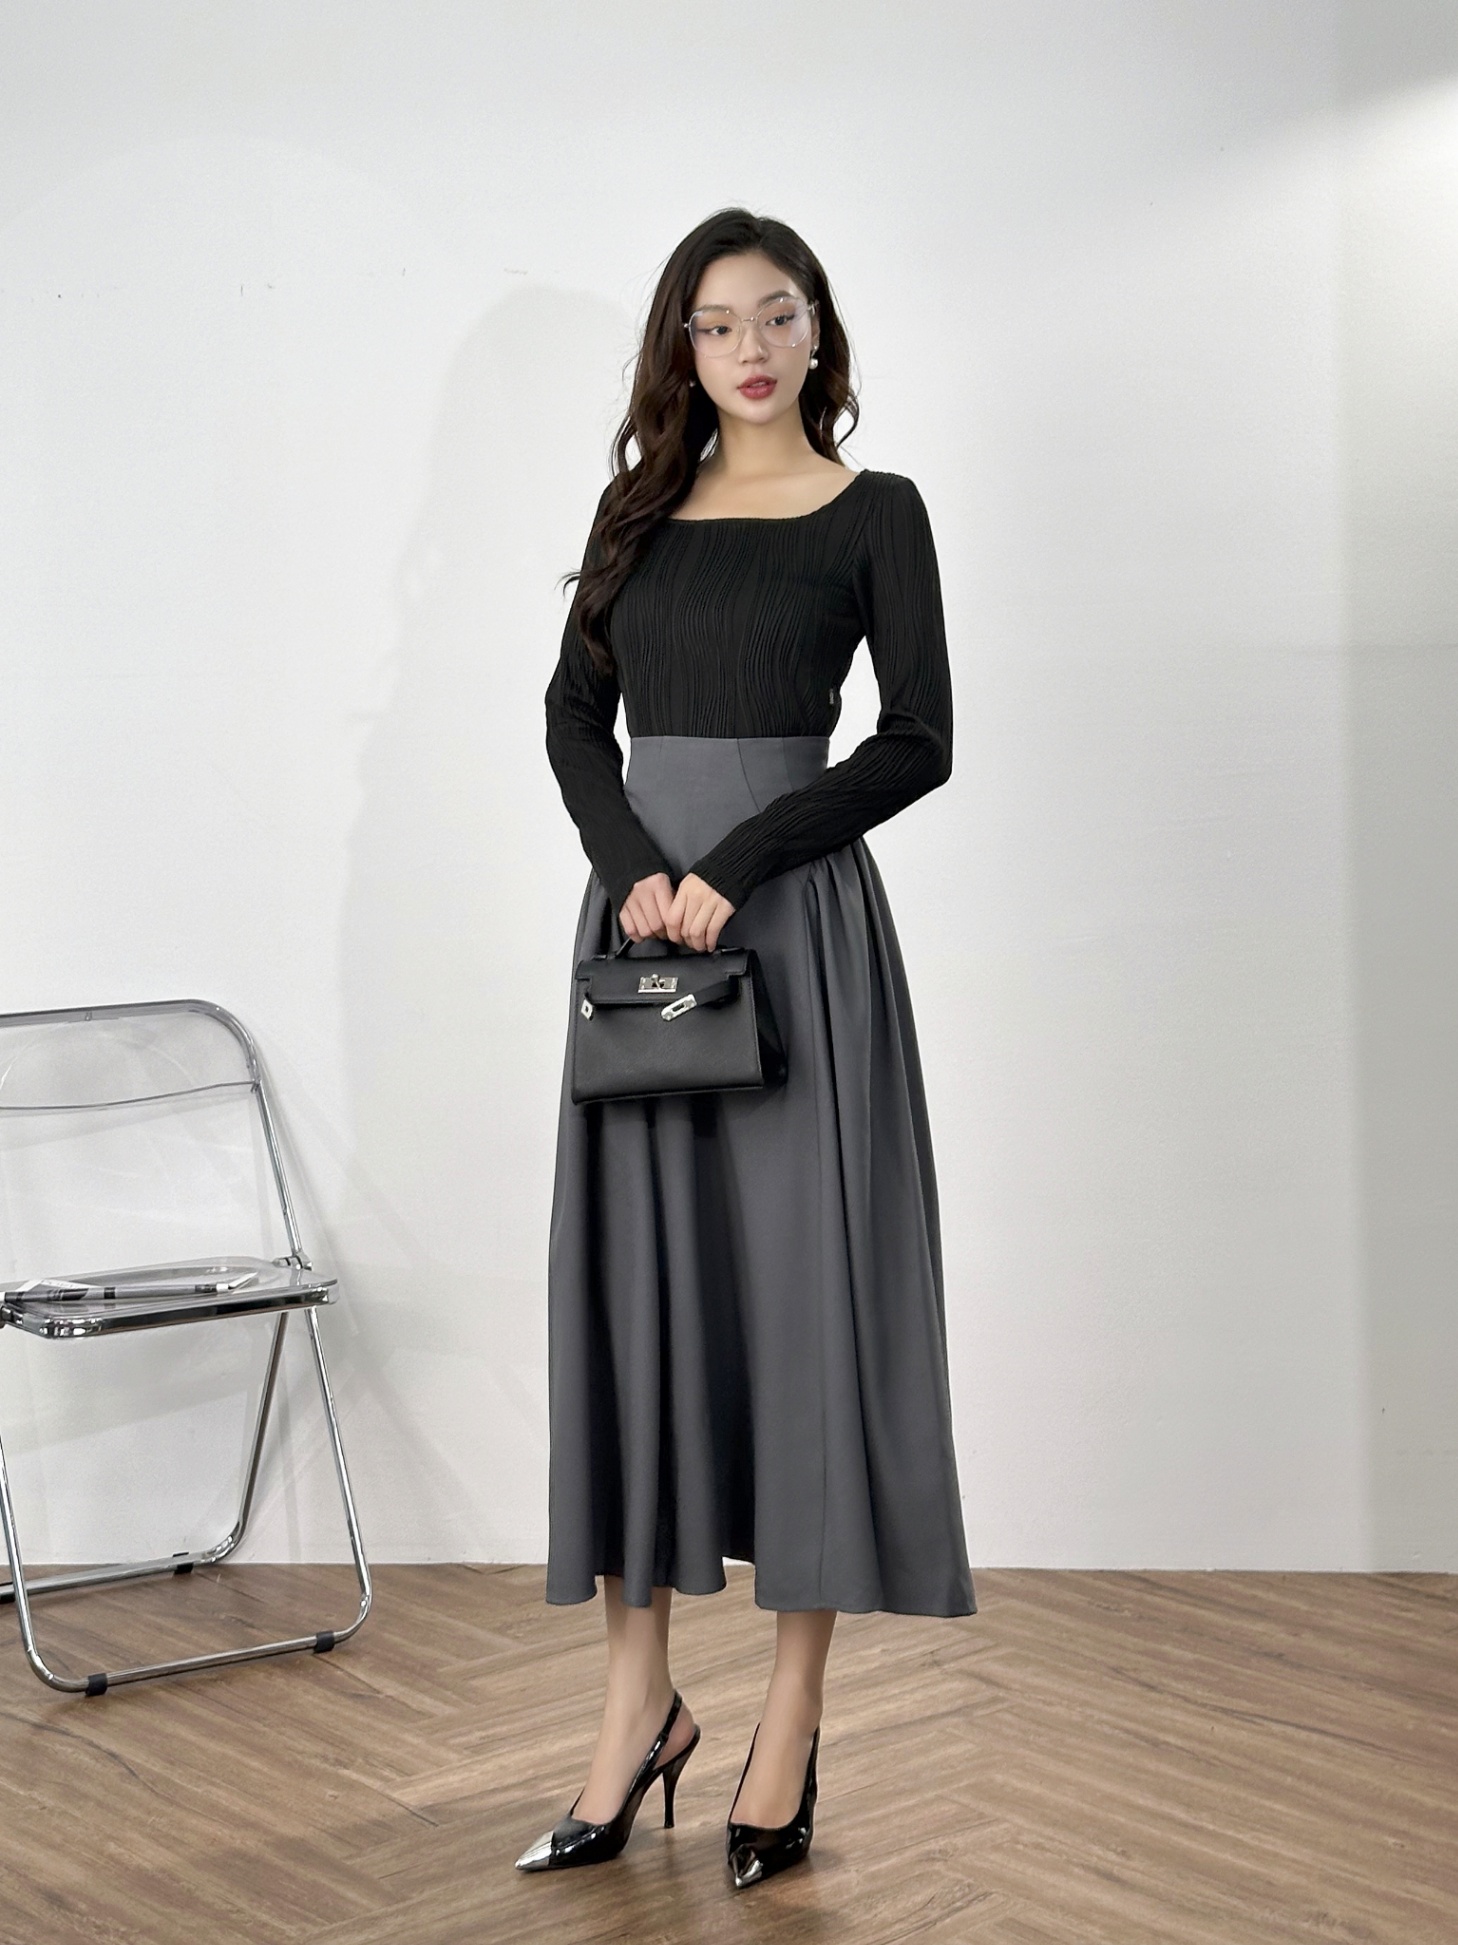 Đầm xòe màu đen thiết kế cổ vuông đính ngọc trai | Đầm xòe đẹp